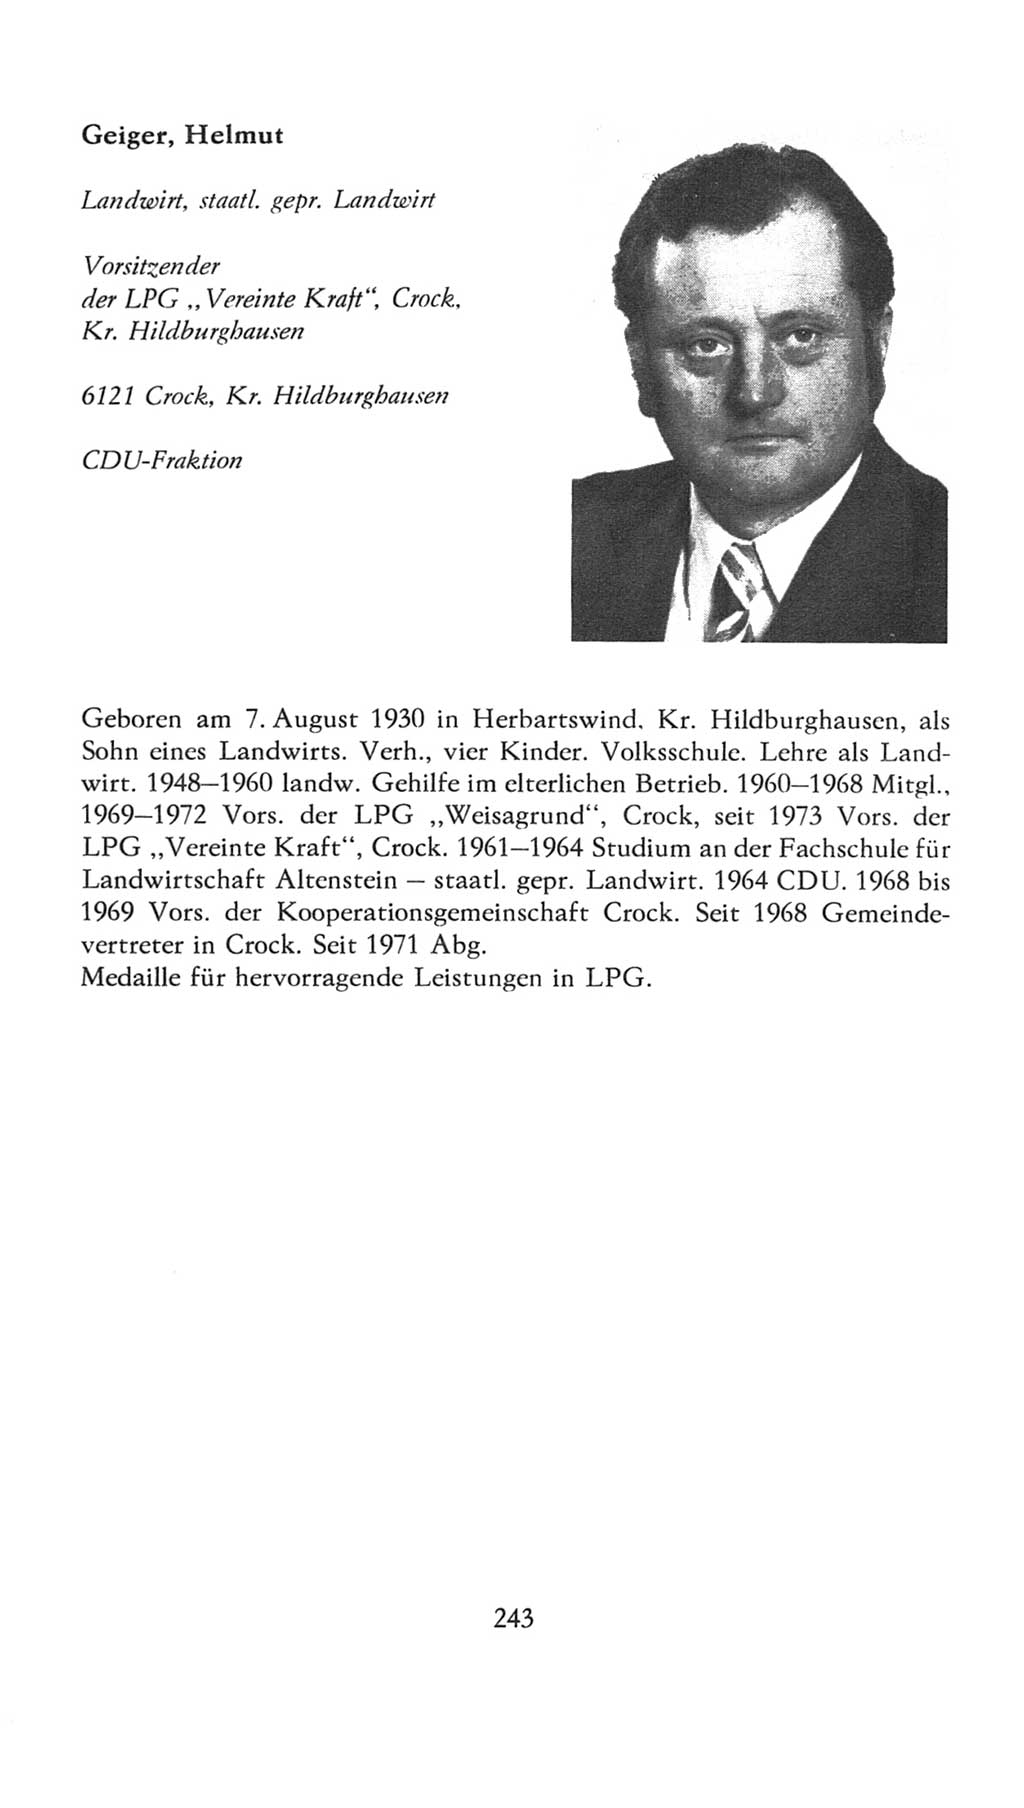 Volkskammer (VK) der Deutschen Demokratischen Republik (DDR), 7. Wahlperiode 1976-1981, Seite 243 (VK. DDR 7. WP. 1976-1981, S. 243)